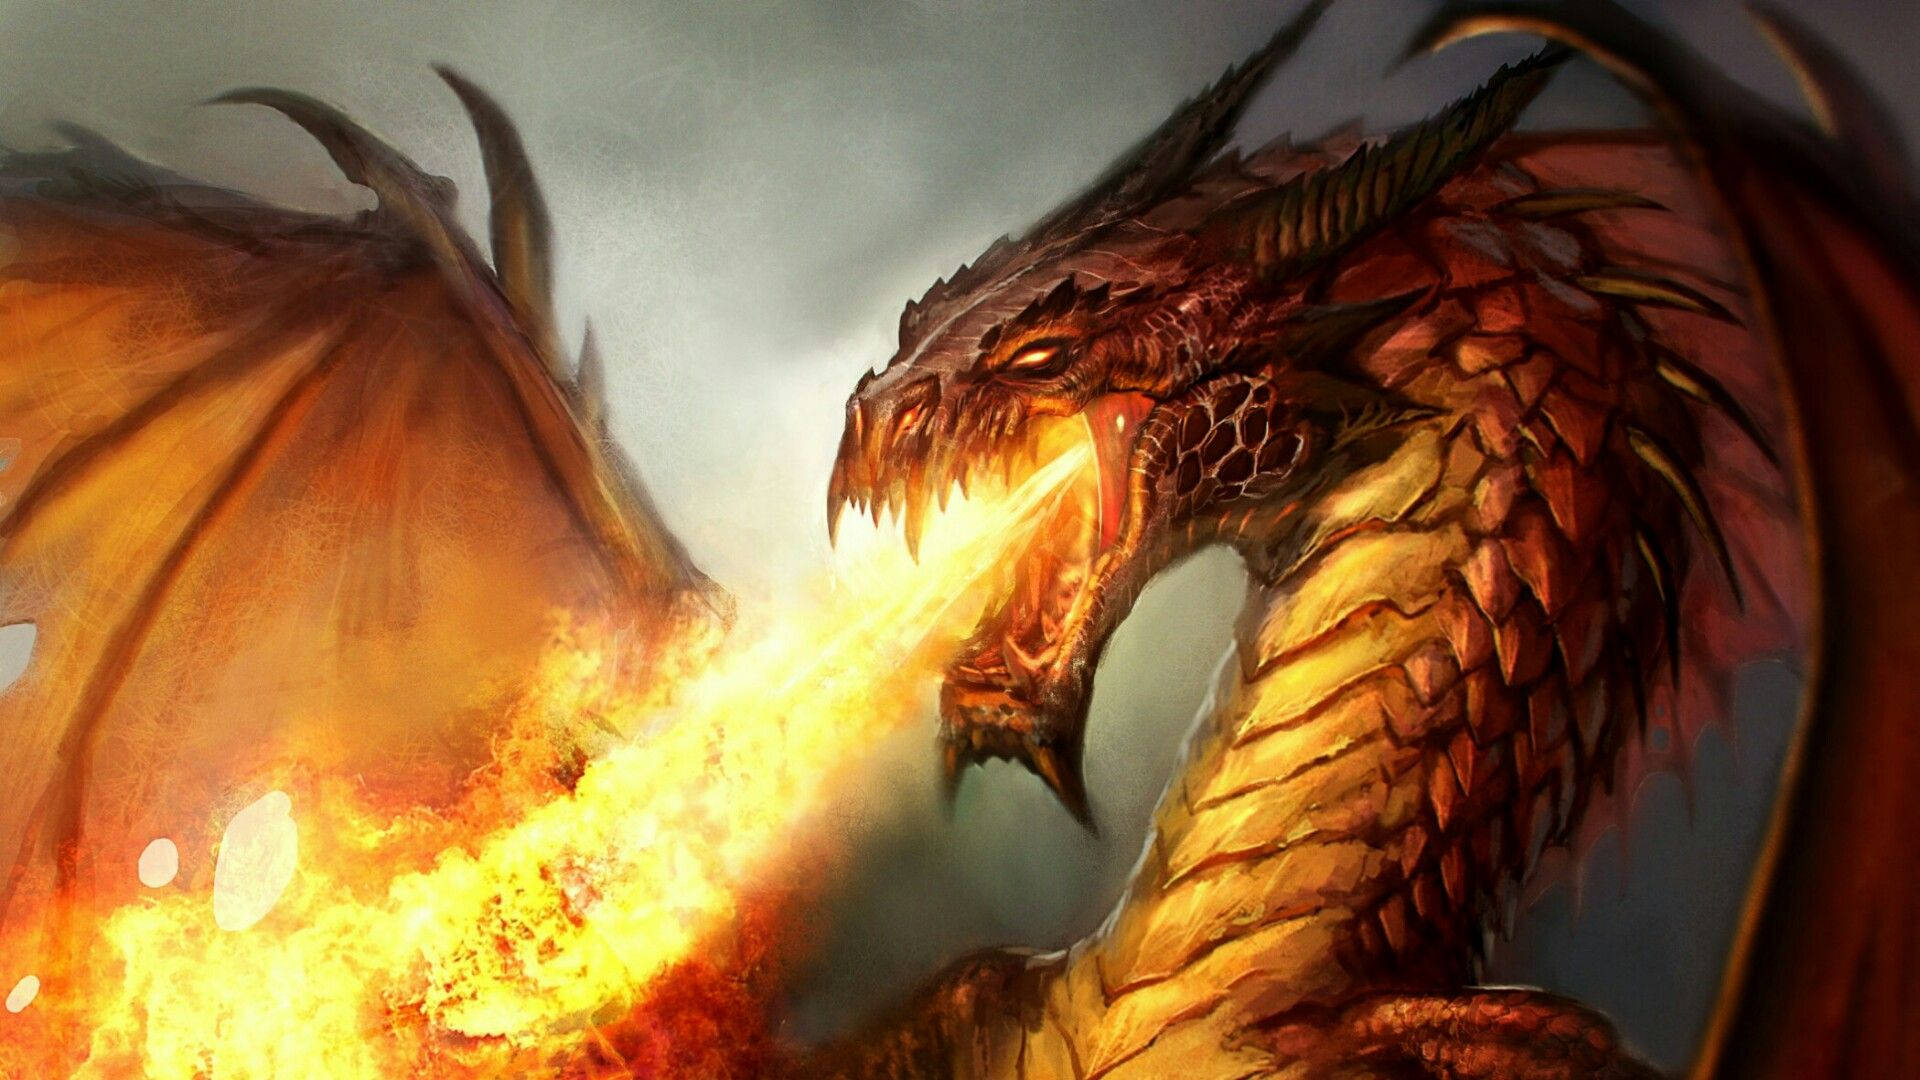 Fire Breathing Dragon Portrait Wallpaper